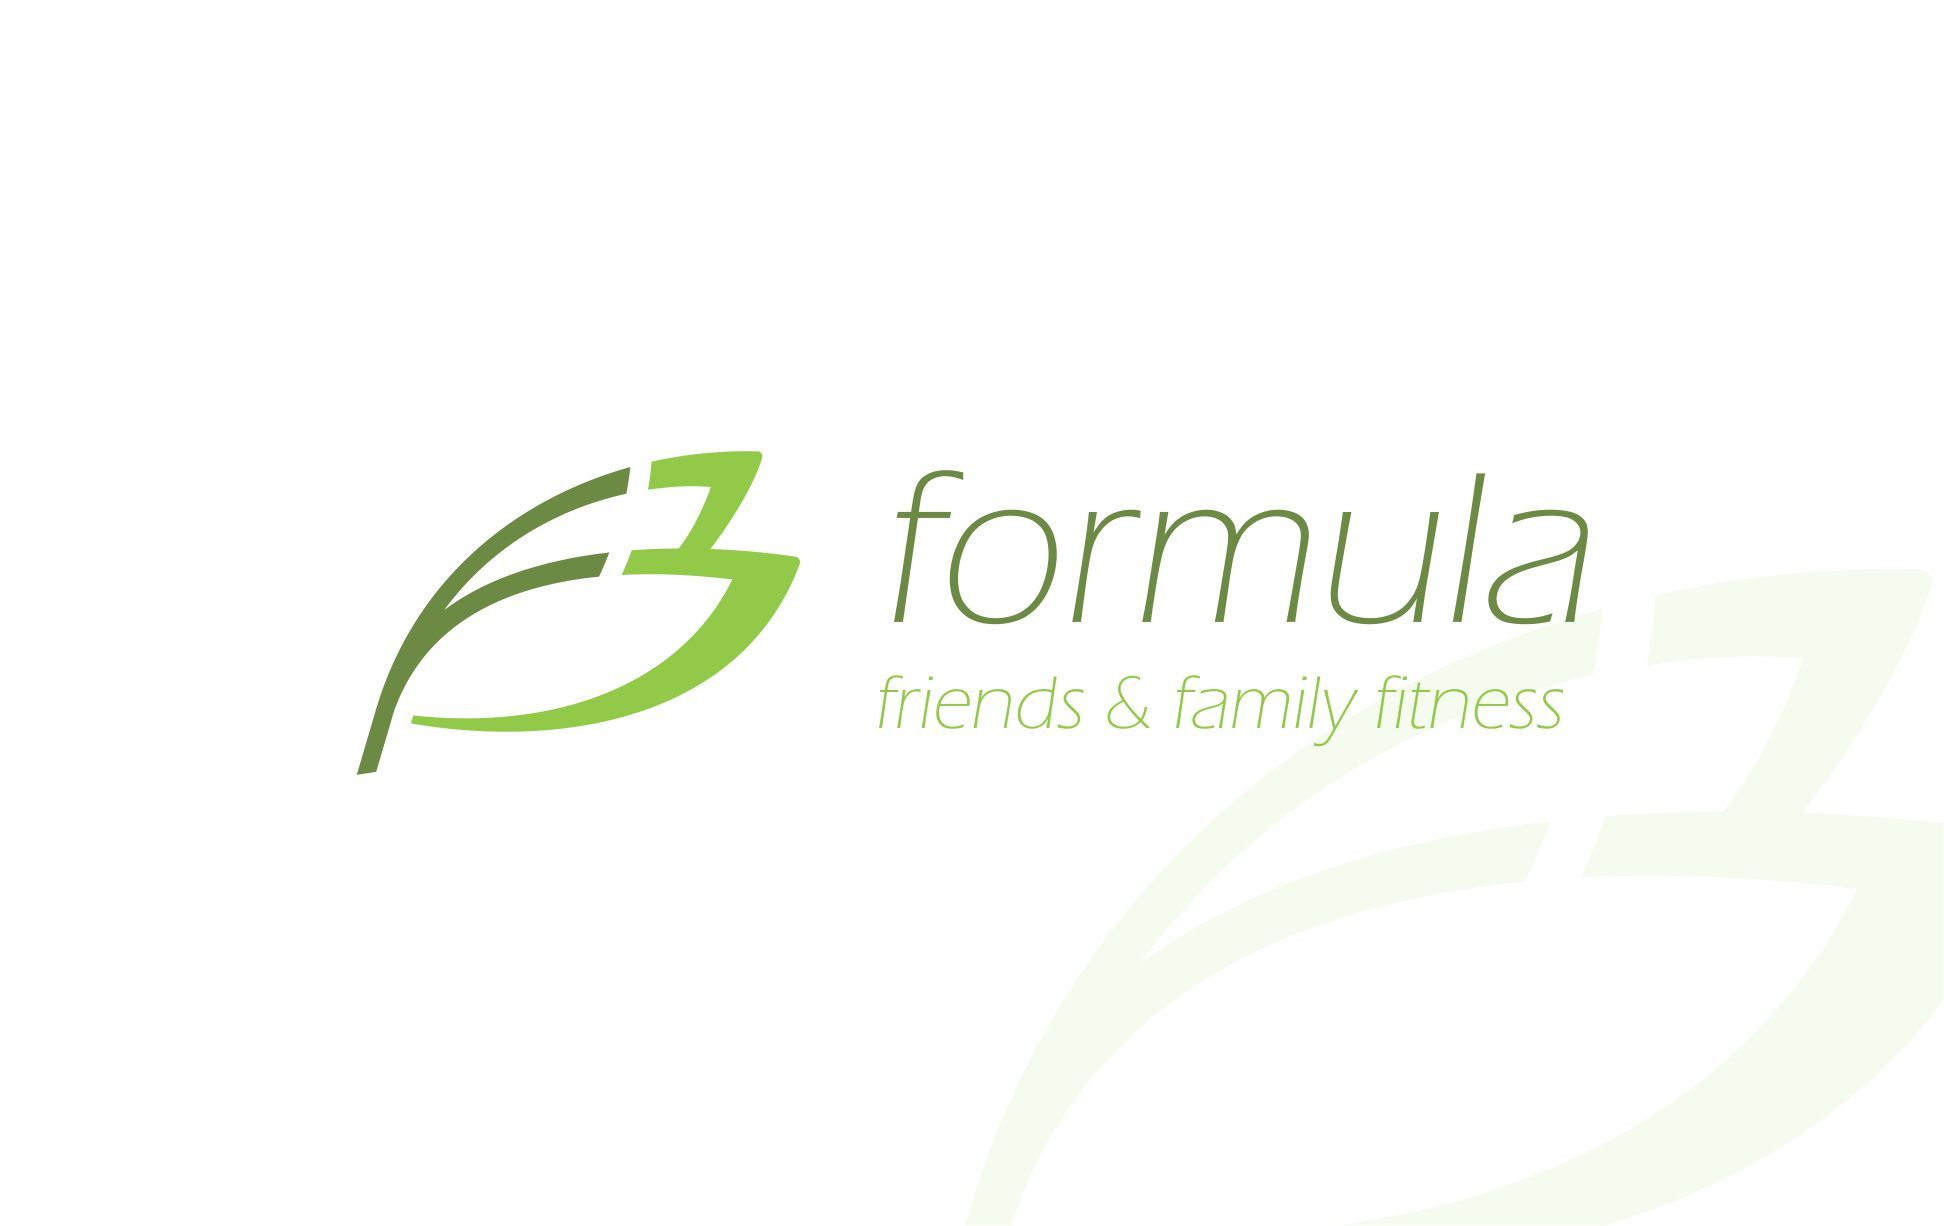 Лого и фирменный стиль для F3 formula - дизайнер dubio